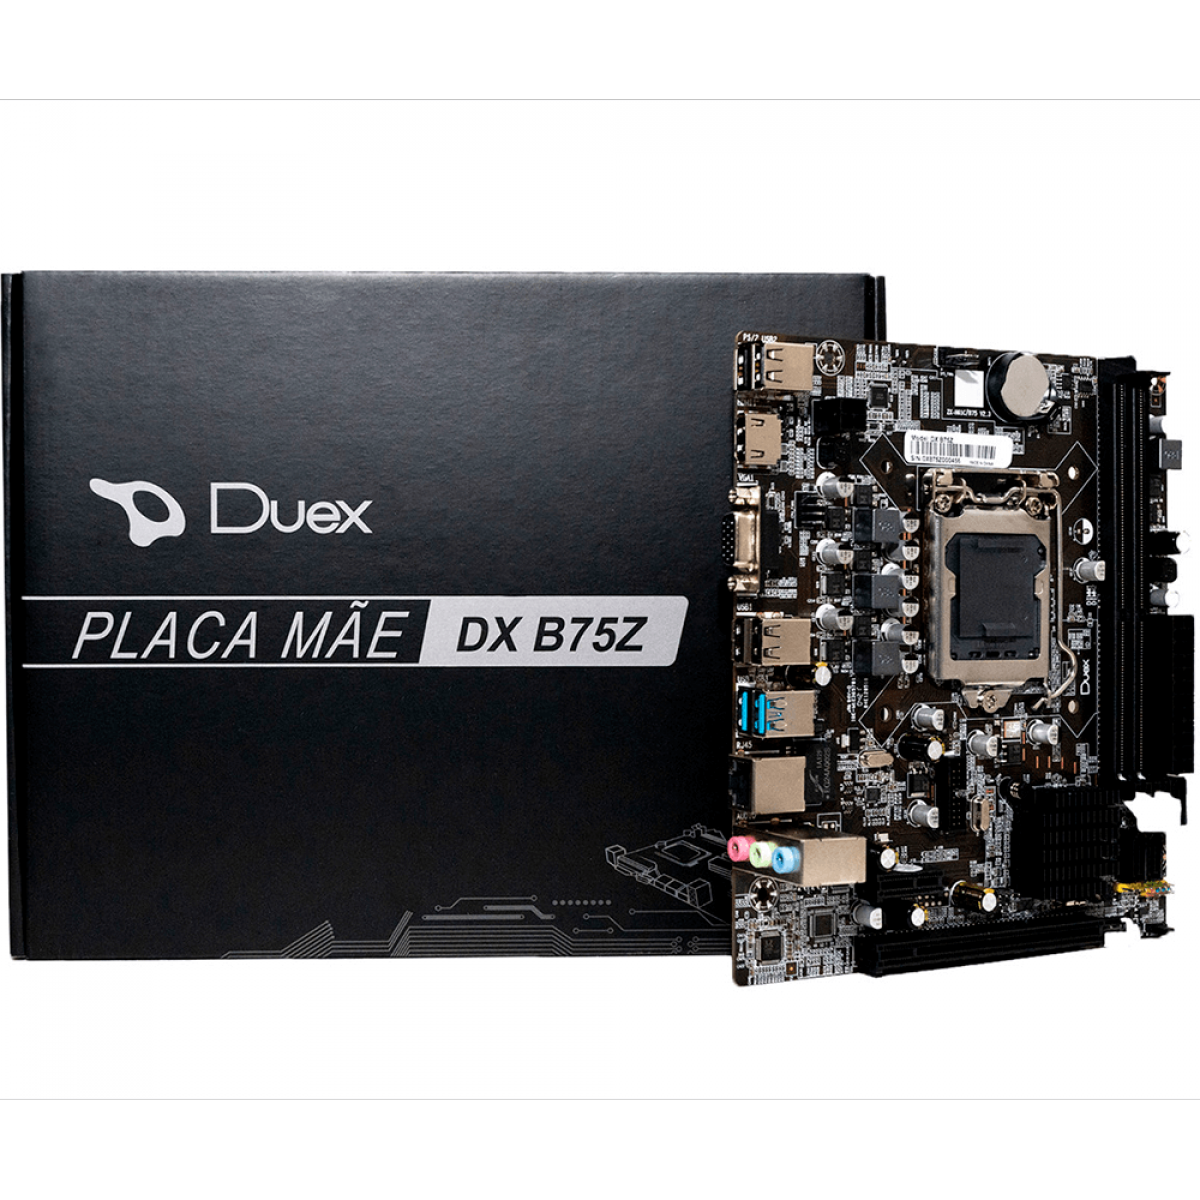 Placa Mãe Duex DX B75Z, Chipset B75, Intel LGA 1155, MATX, DDR3, DX B75Z